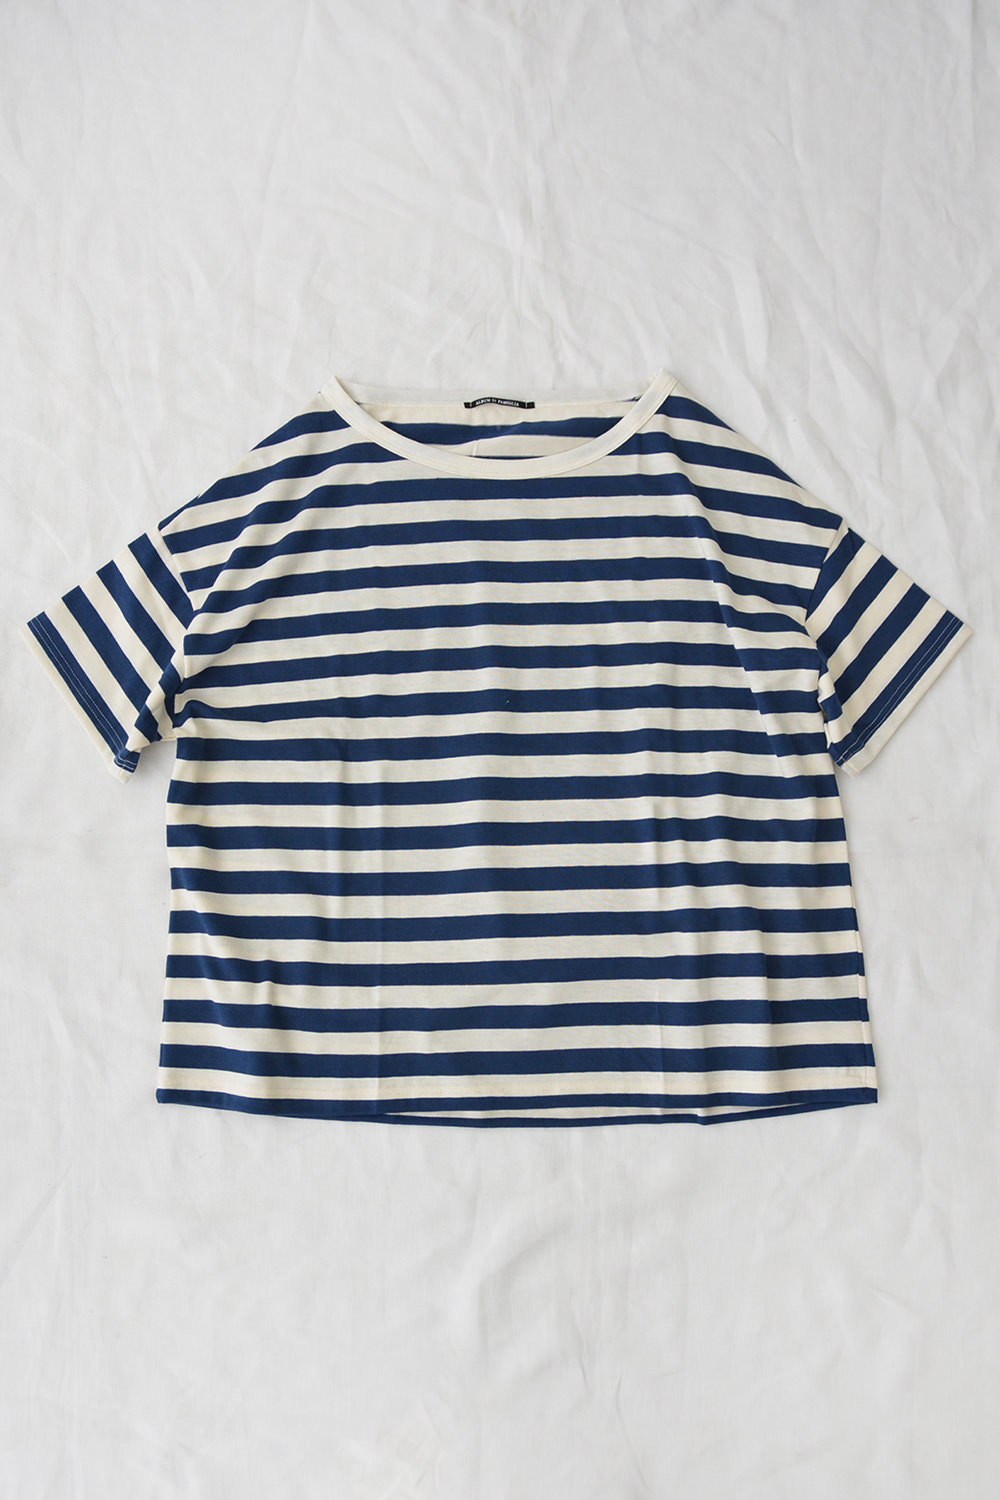 Album di Famiglia, T-Shirts Riga 1750 - Bluette Stripe